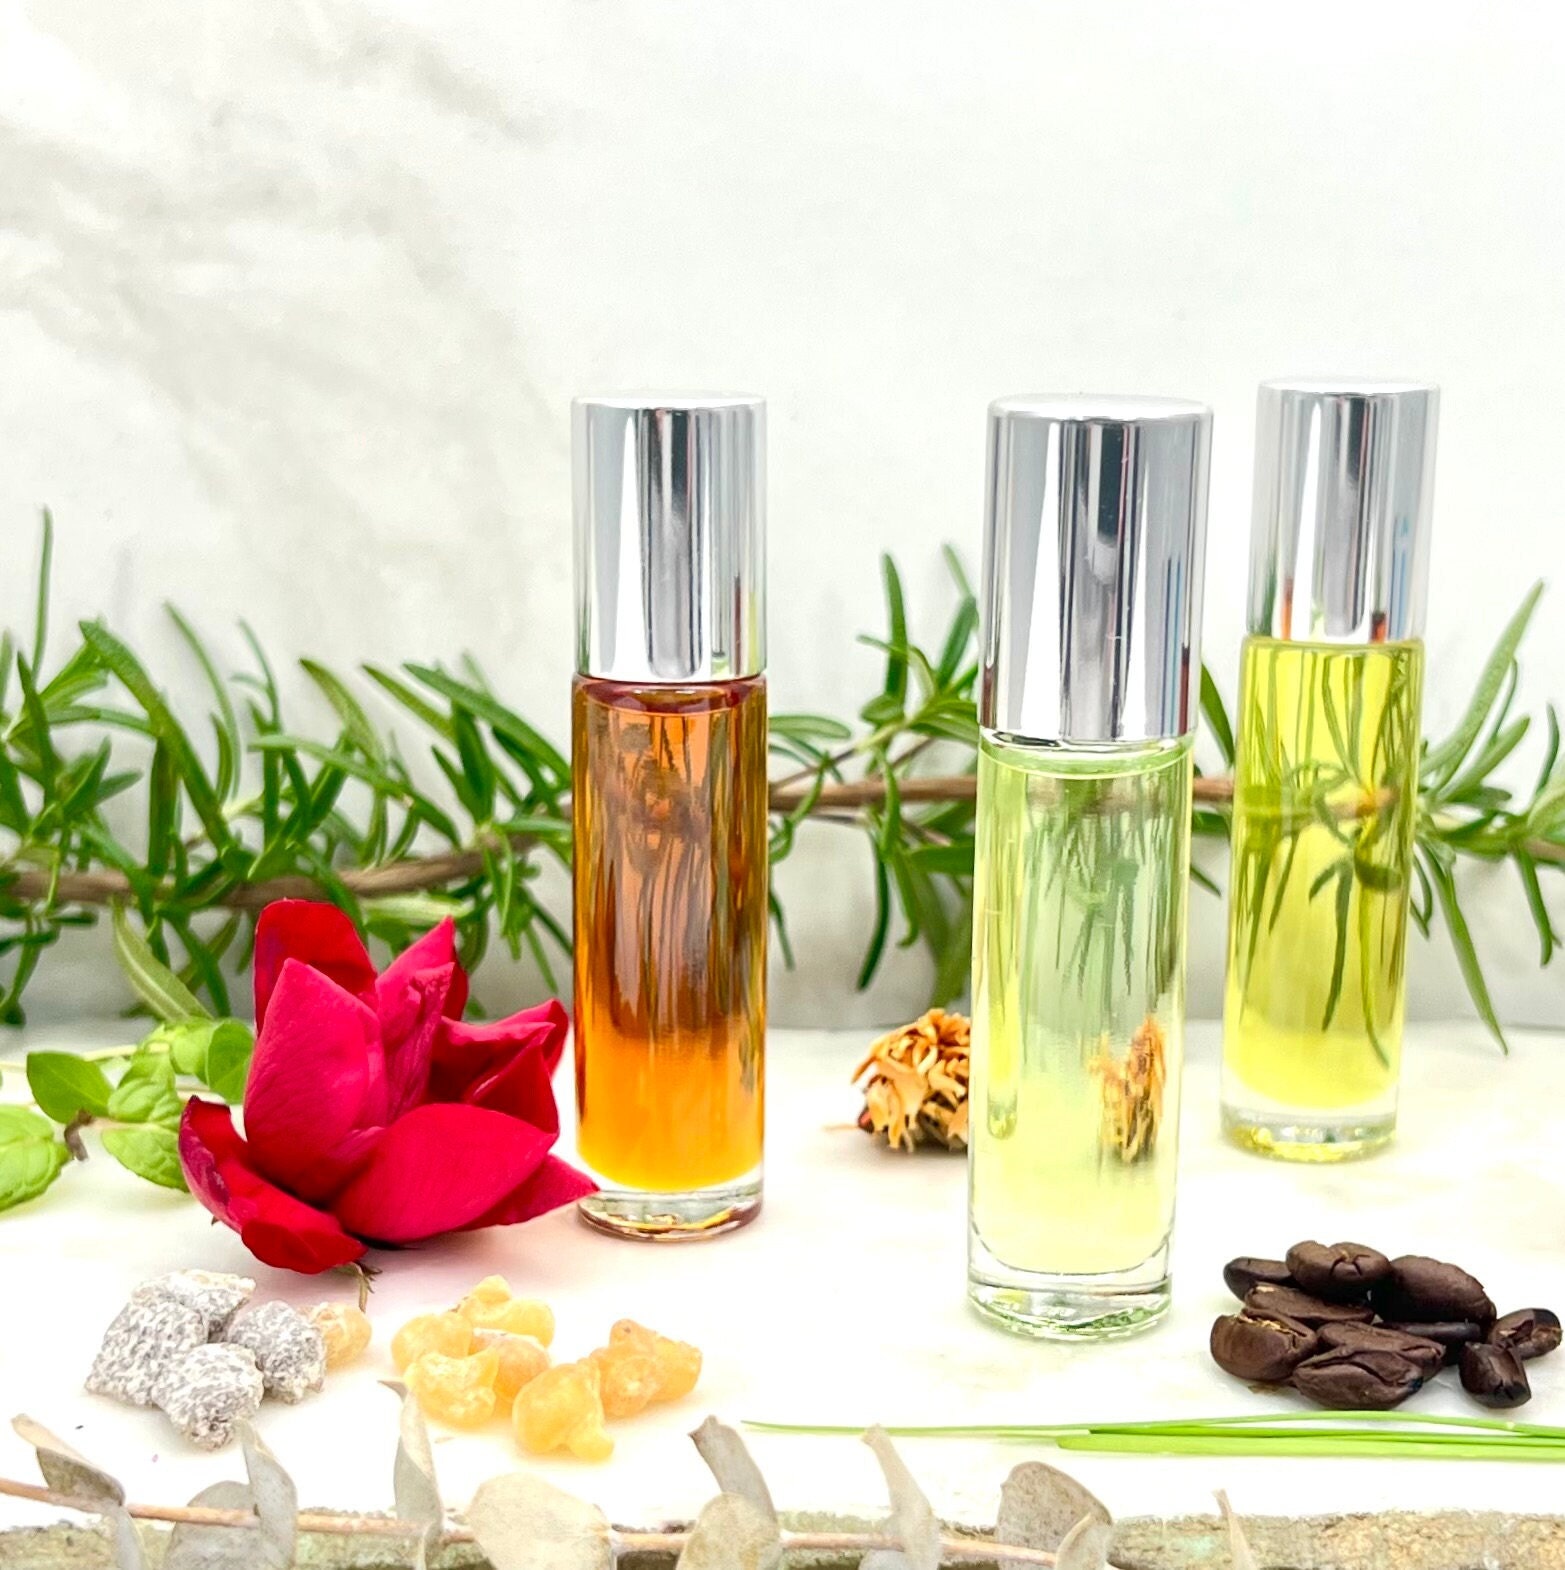 Wholesale (1/3 oz) Body Oils | 40 Roll-On Bottles | Pick 4 Unique Fragrances